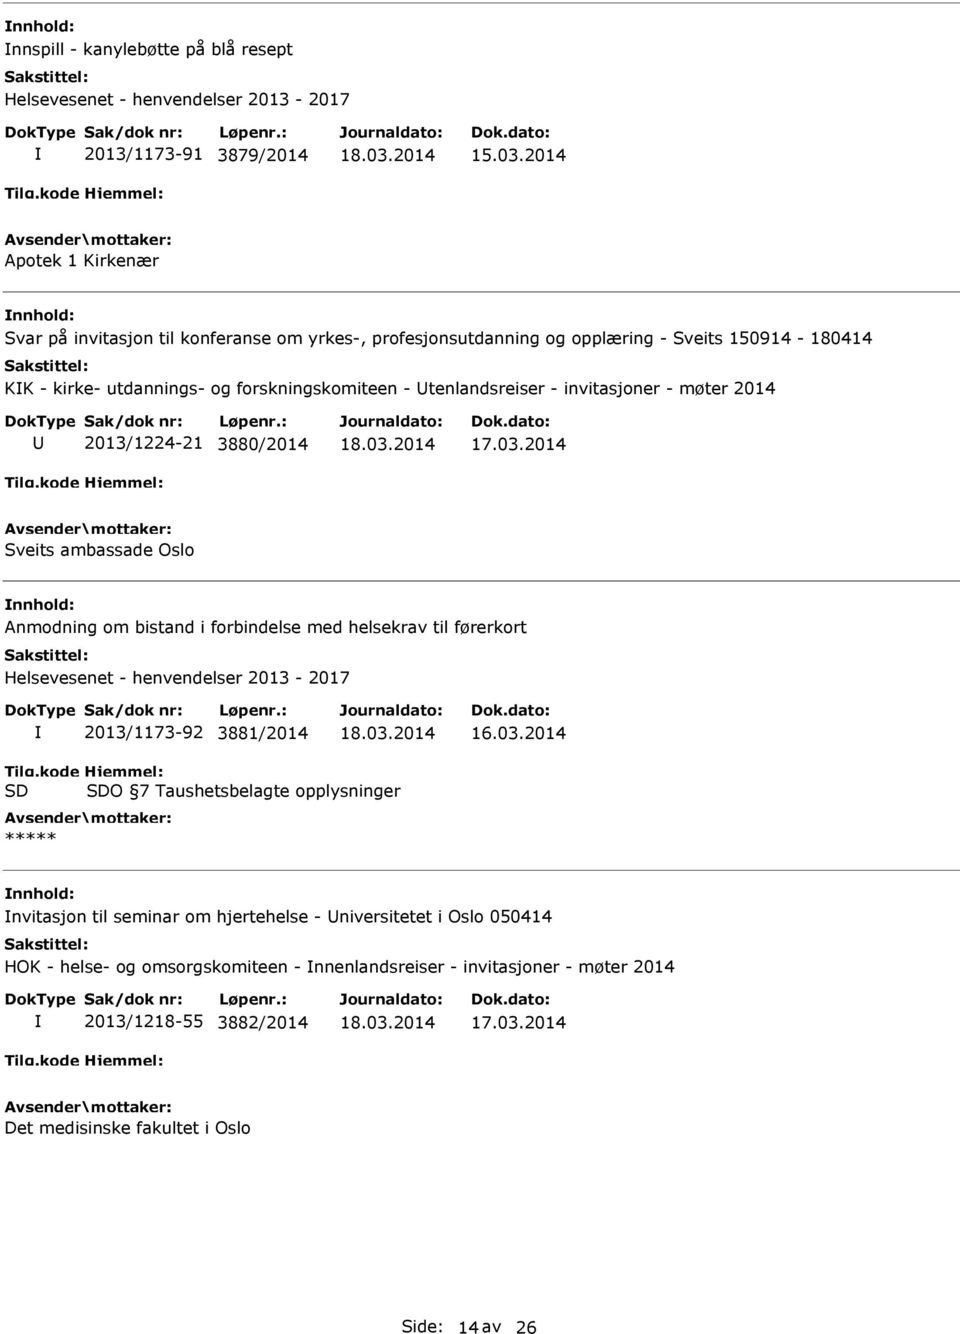 - invitasjoner - møter 2014 2013/1224-21 3880/2014 Sveits ambassade Oslo Anmodning om bistand i forbindelse med helsekrav til førerkort Helsevesenet - henvendelser 2013-2017 2013/1173-92